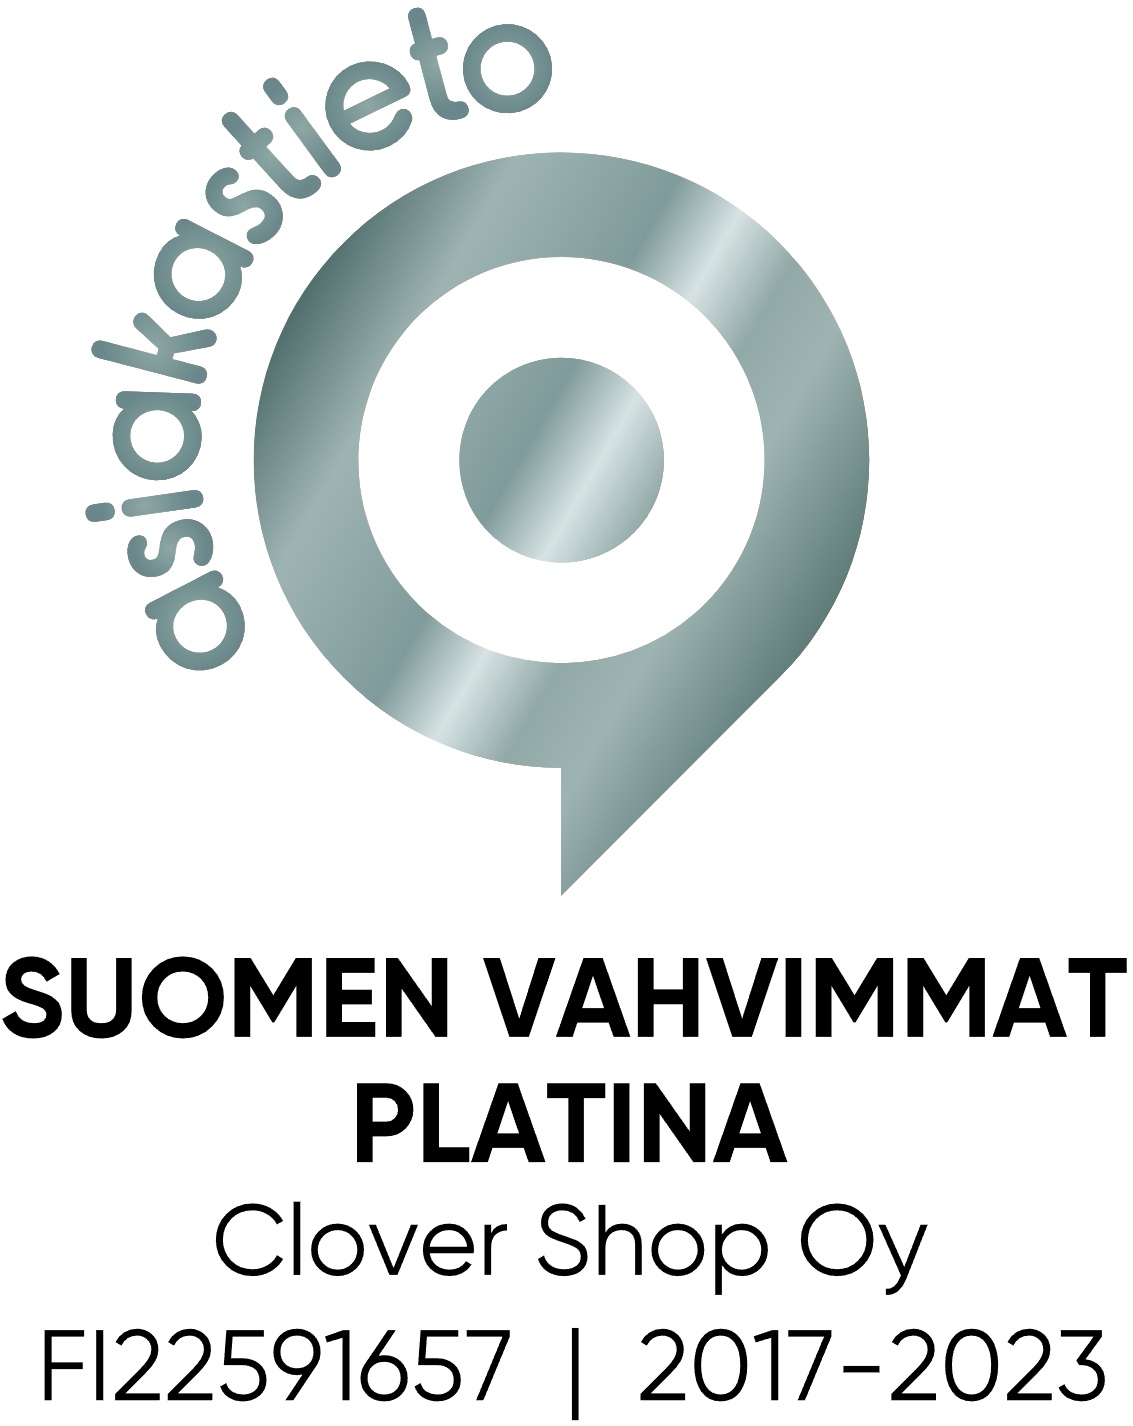 Suomen Vahvimmat Platina 2017-2023